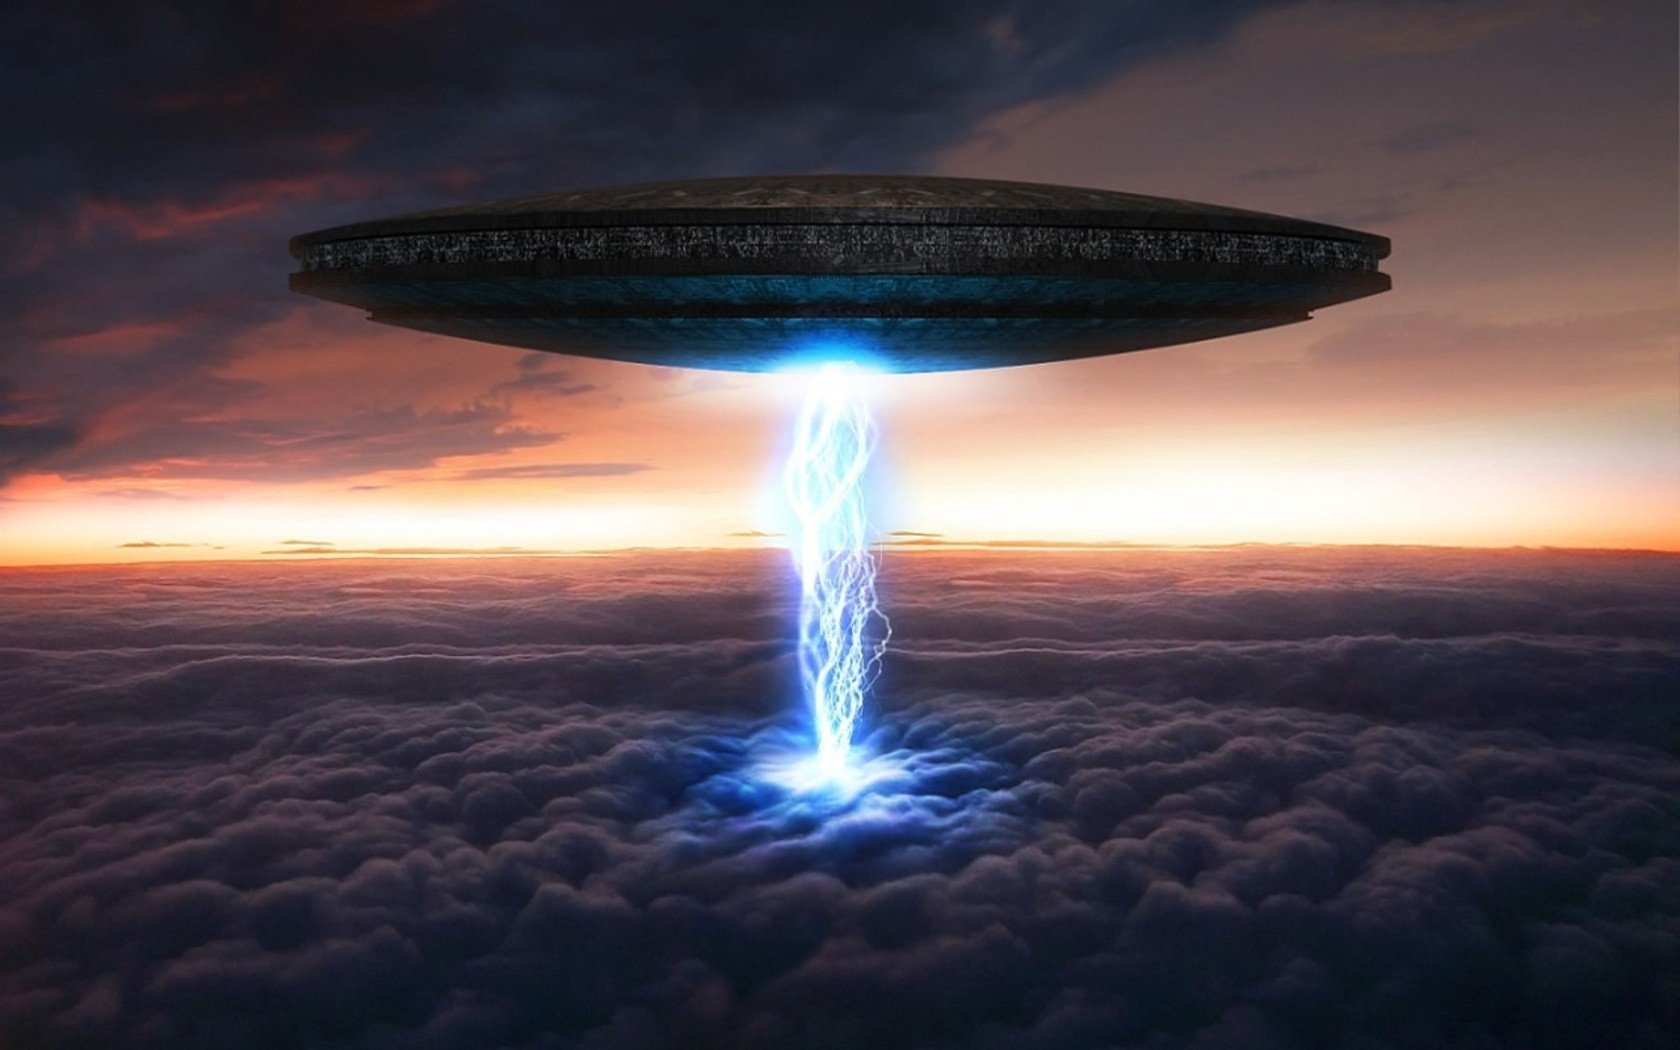 Как фантастический фильм: в Сети появилось видео погони пришельцев за реактивным самолетом – кадры